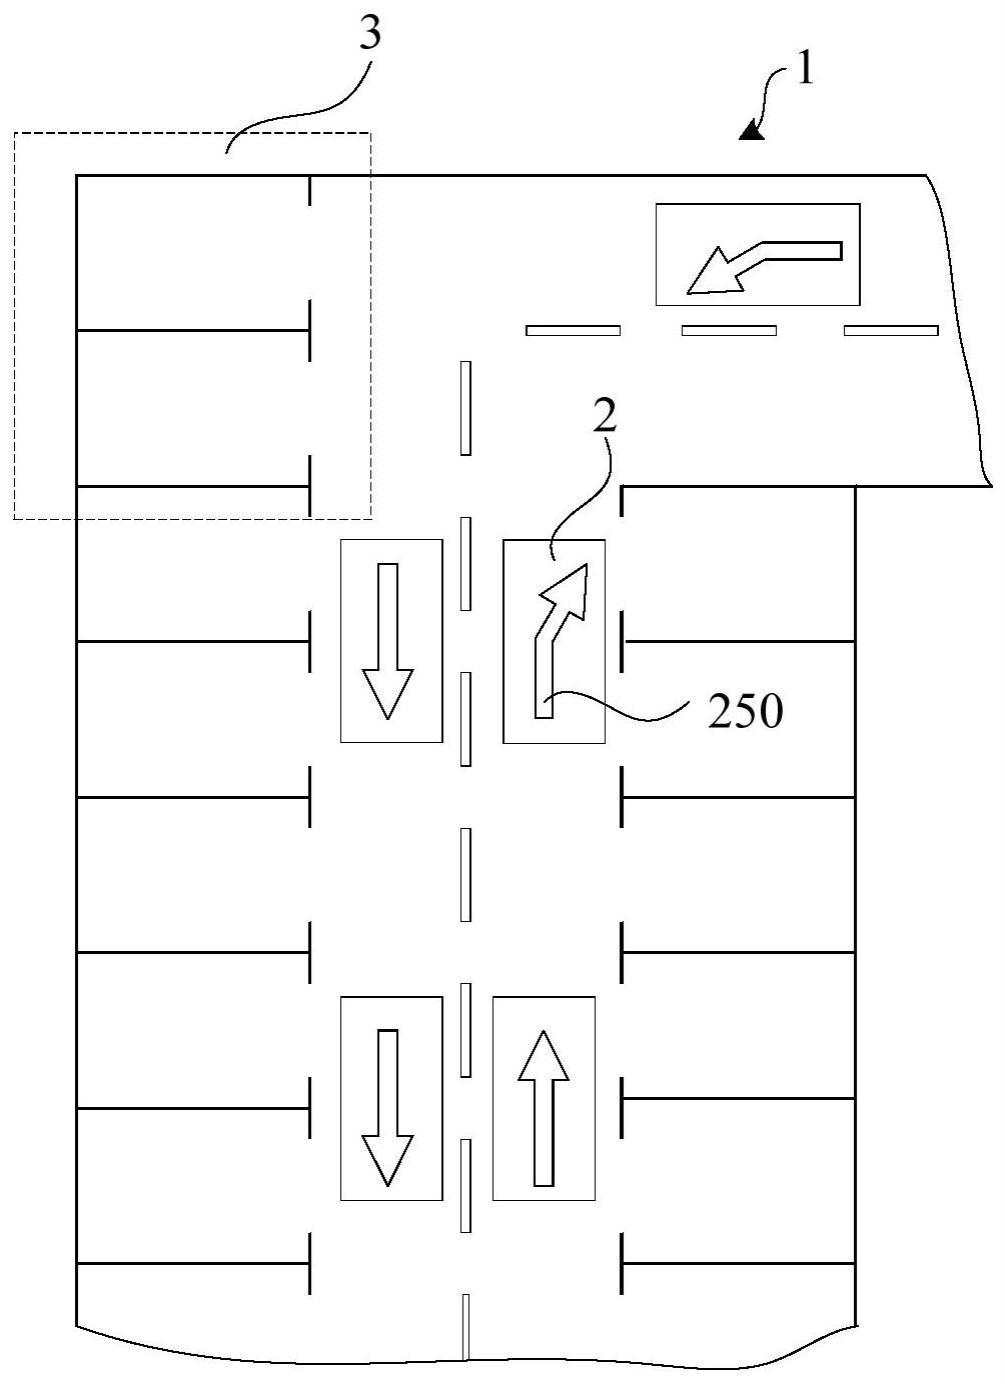 用于停车场的显示标线及停车管理系统的制作方法